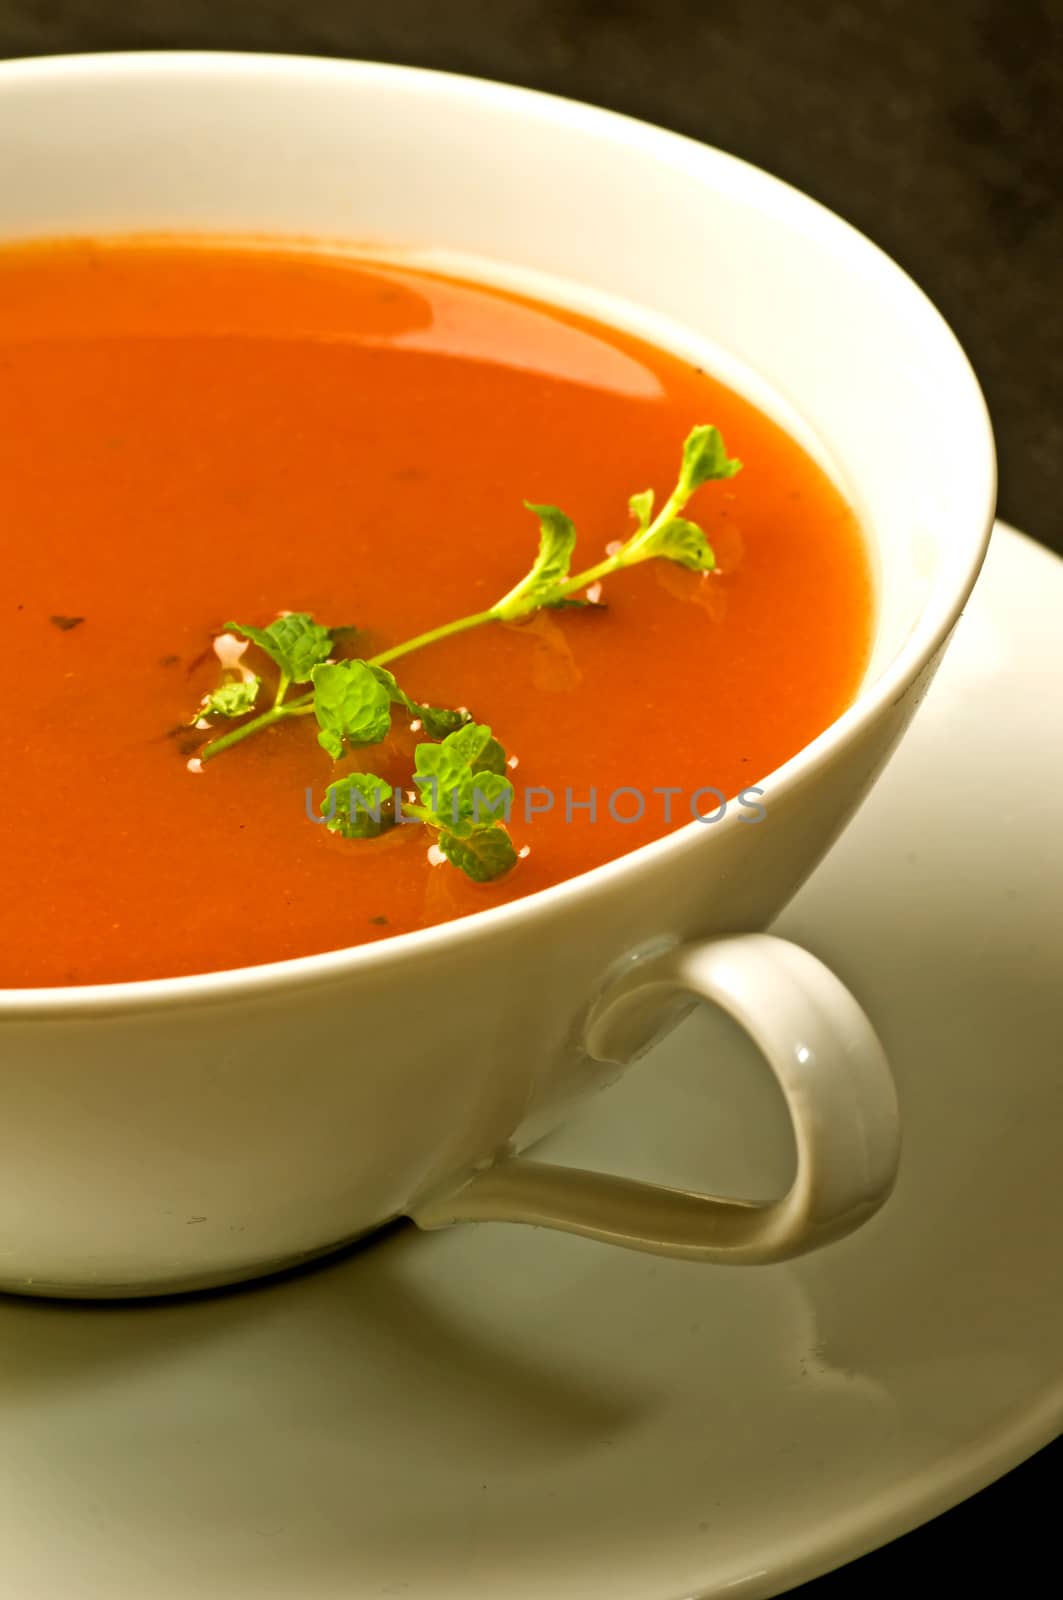 Tomato soup by Jochen